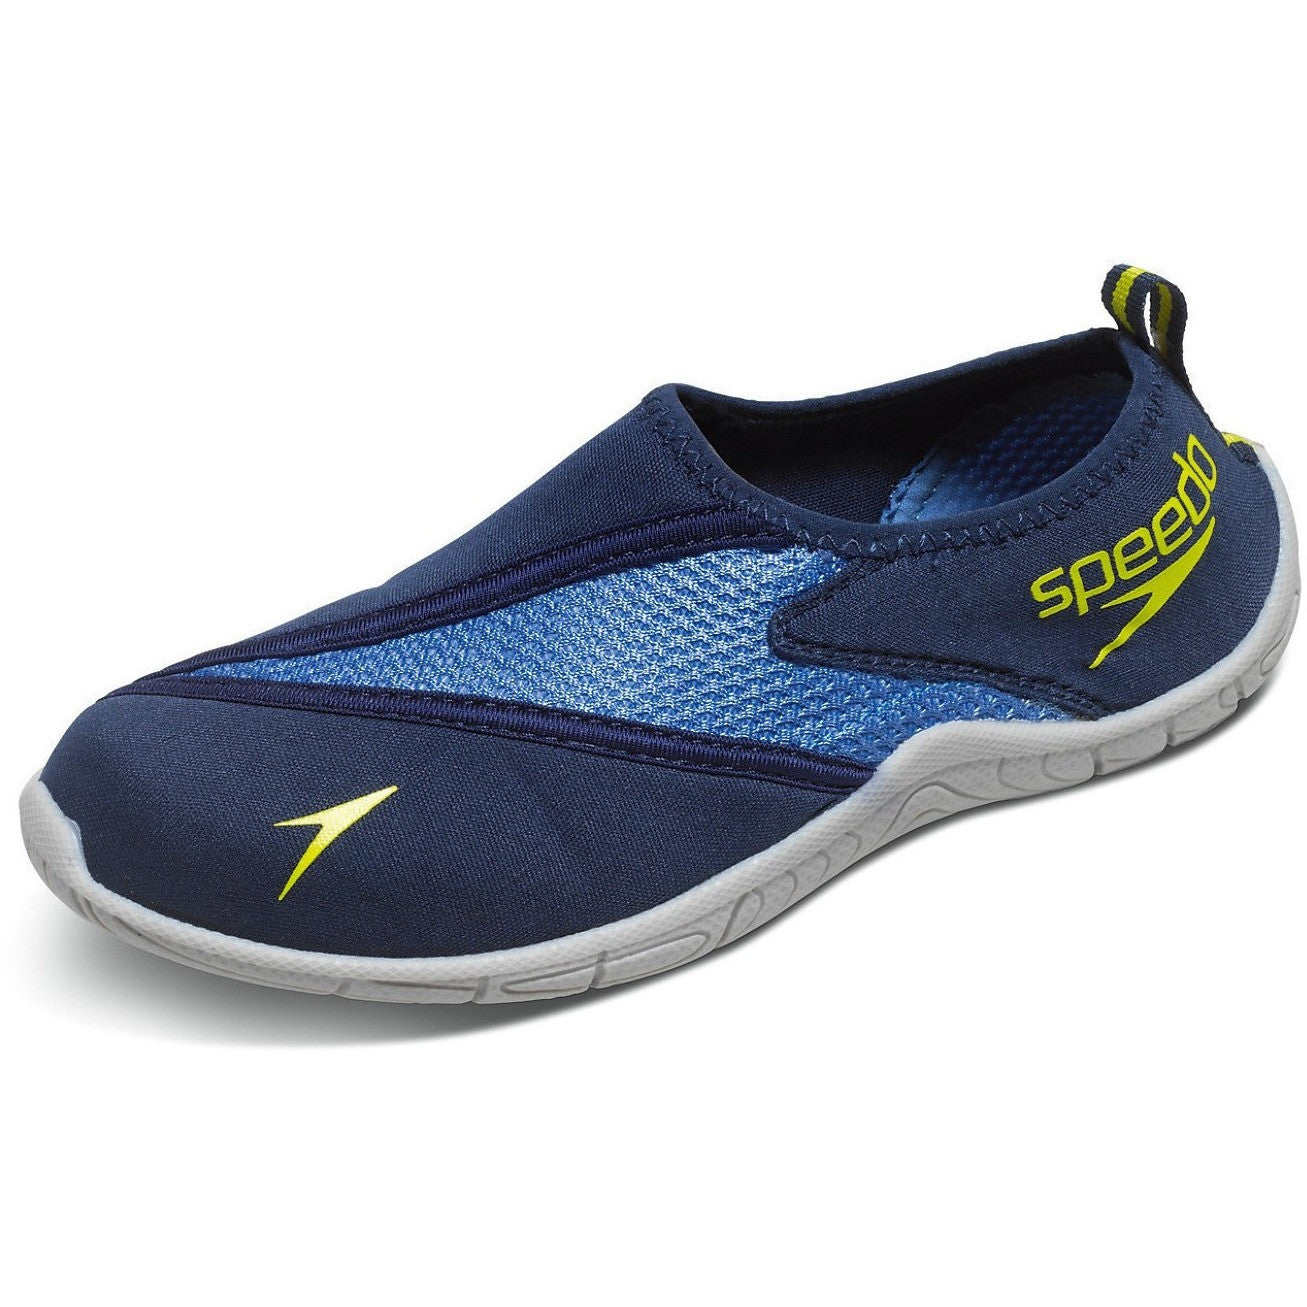 speedo water shoes